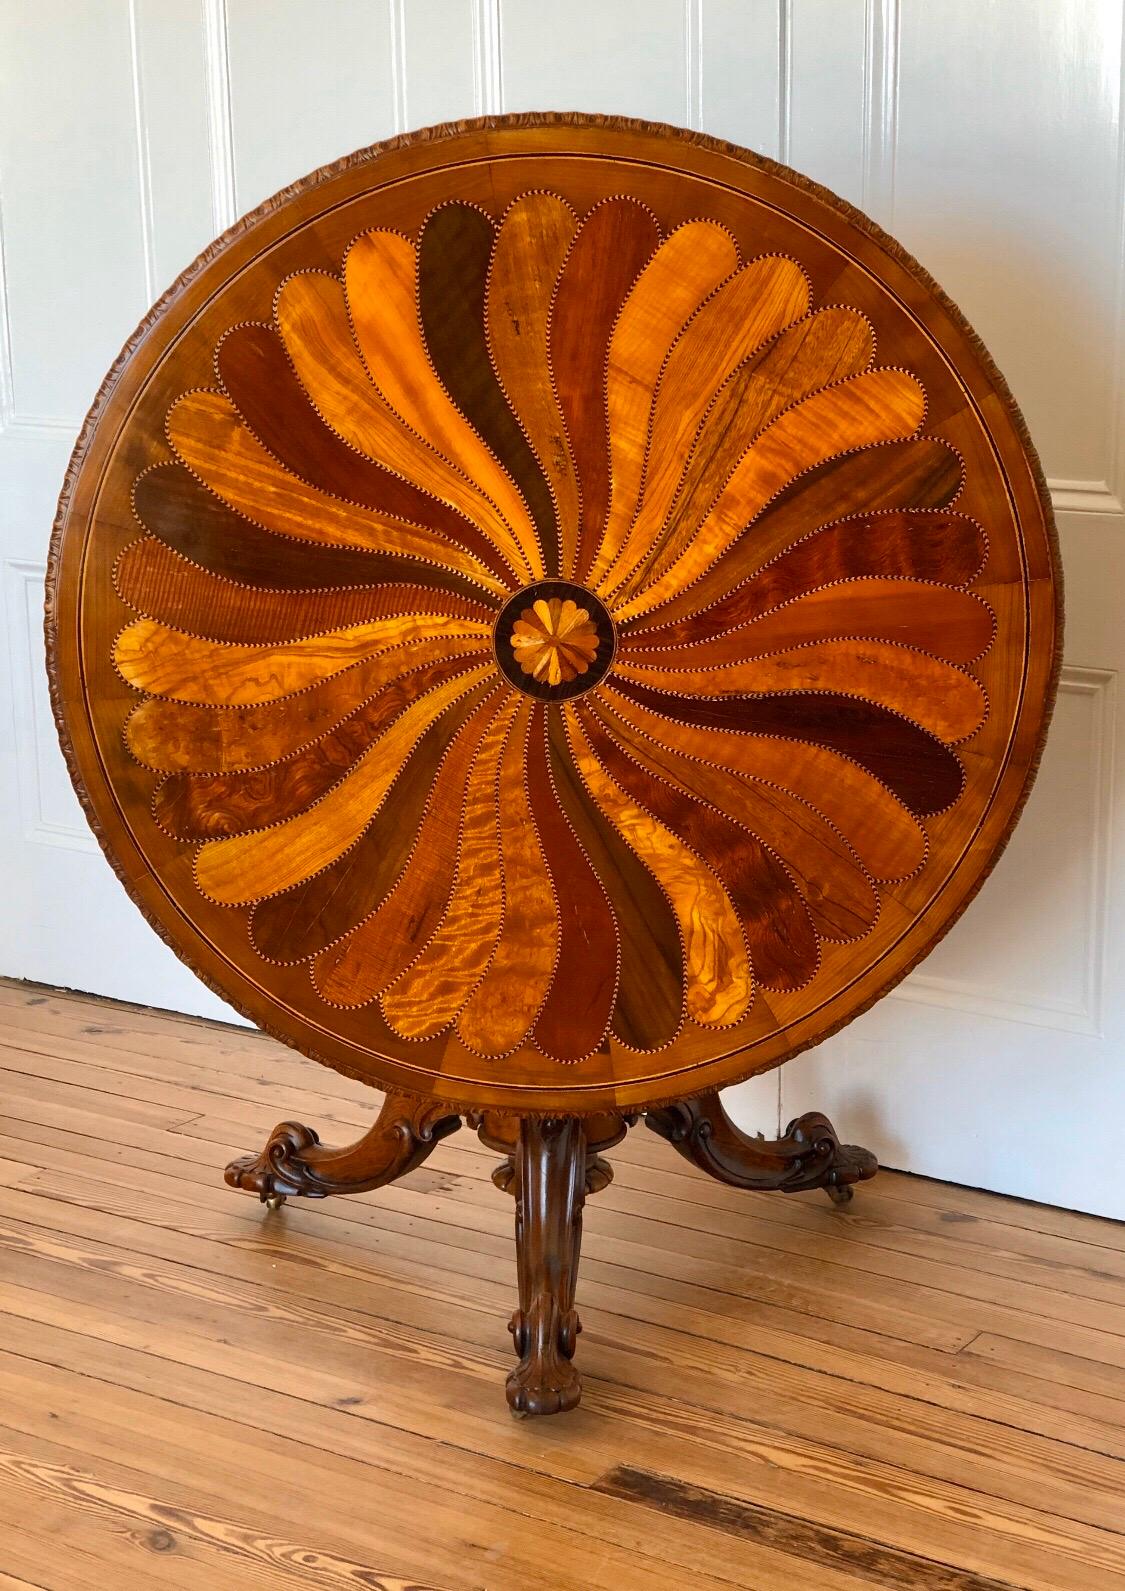 Cette table centrale Coloni utilise des placages de bois exotiques pour créer une spirale spectaculaire, en éventail dans le sens des aiguilles d'une montre avec des bois exotiques contrastés s'étendant à partir d'un éventail central à rosette